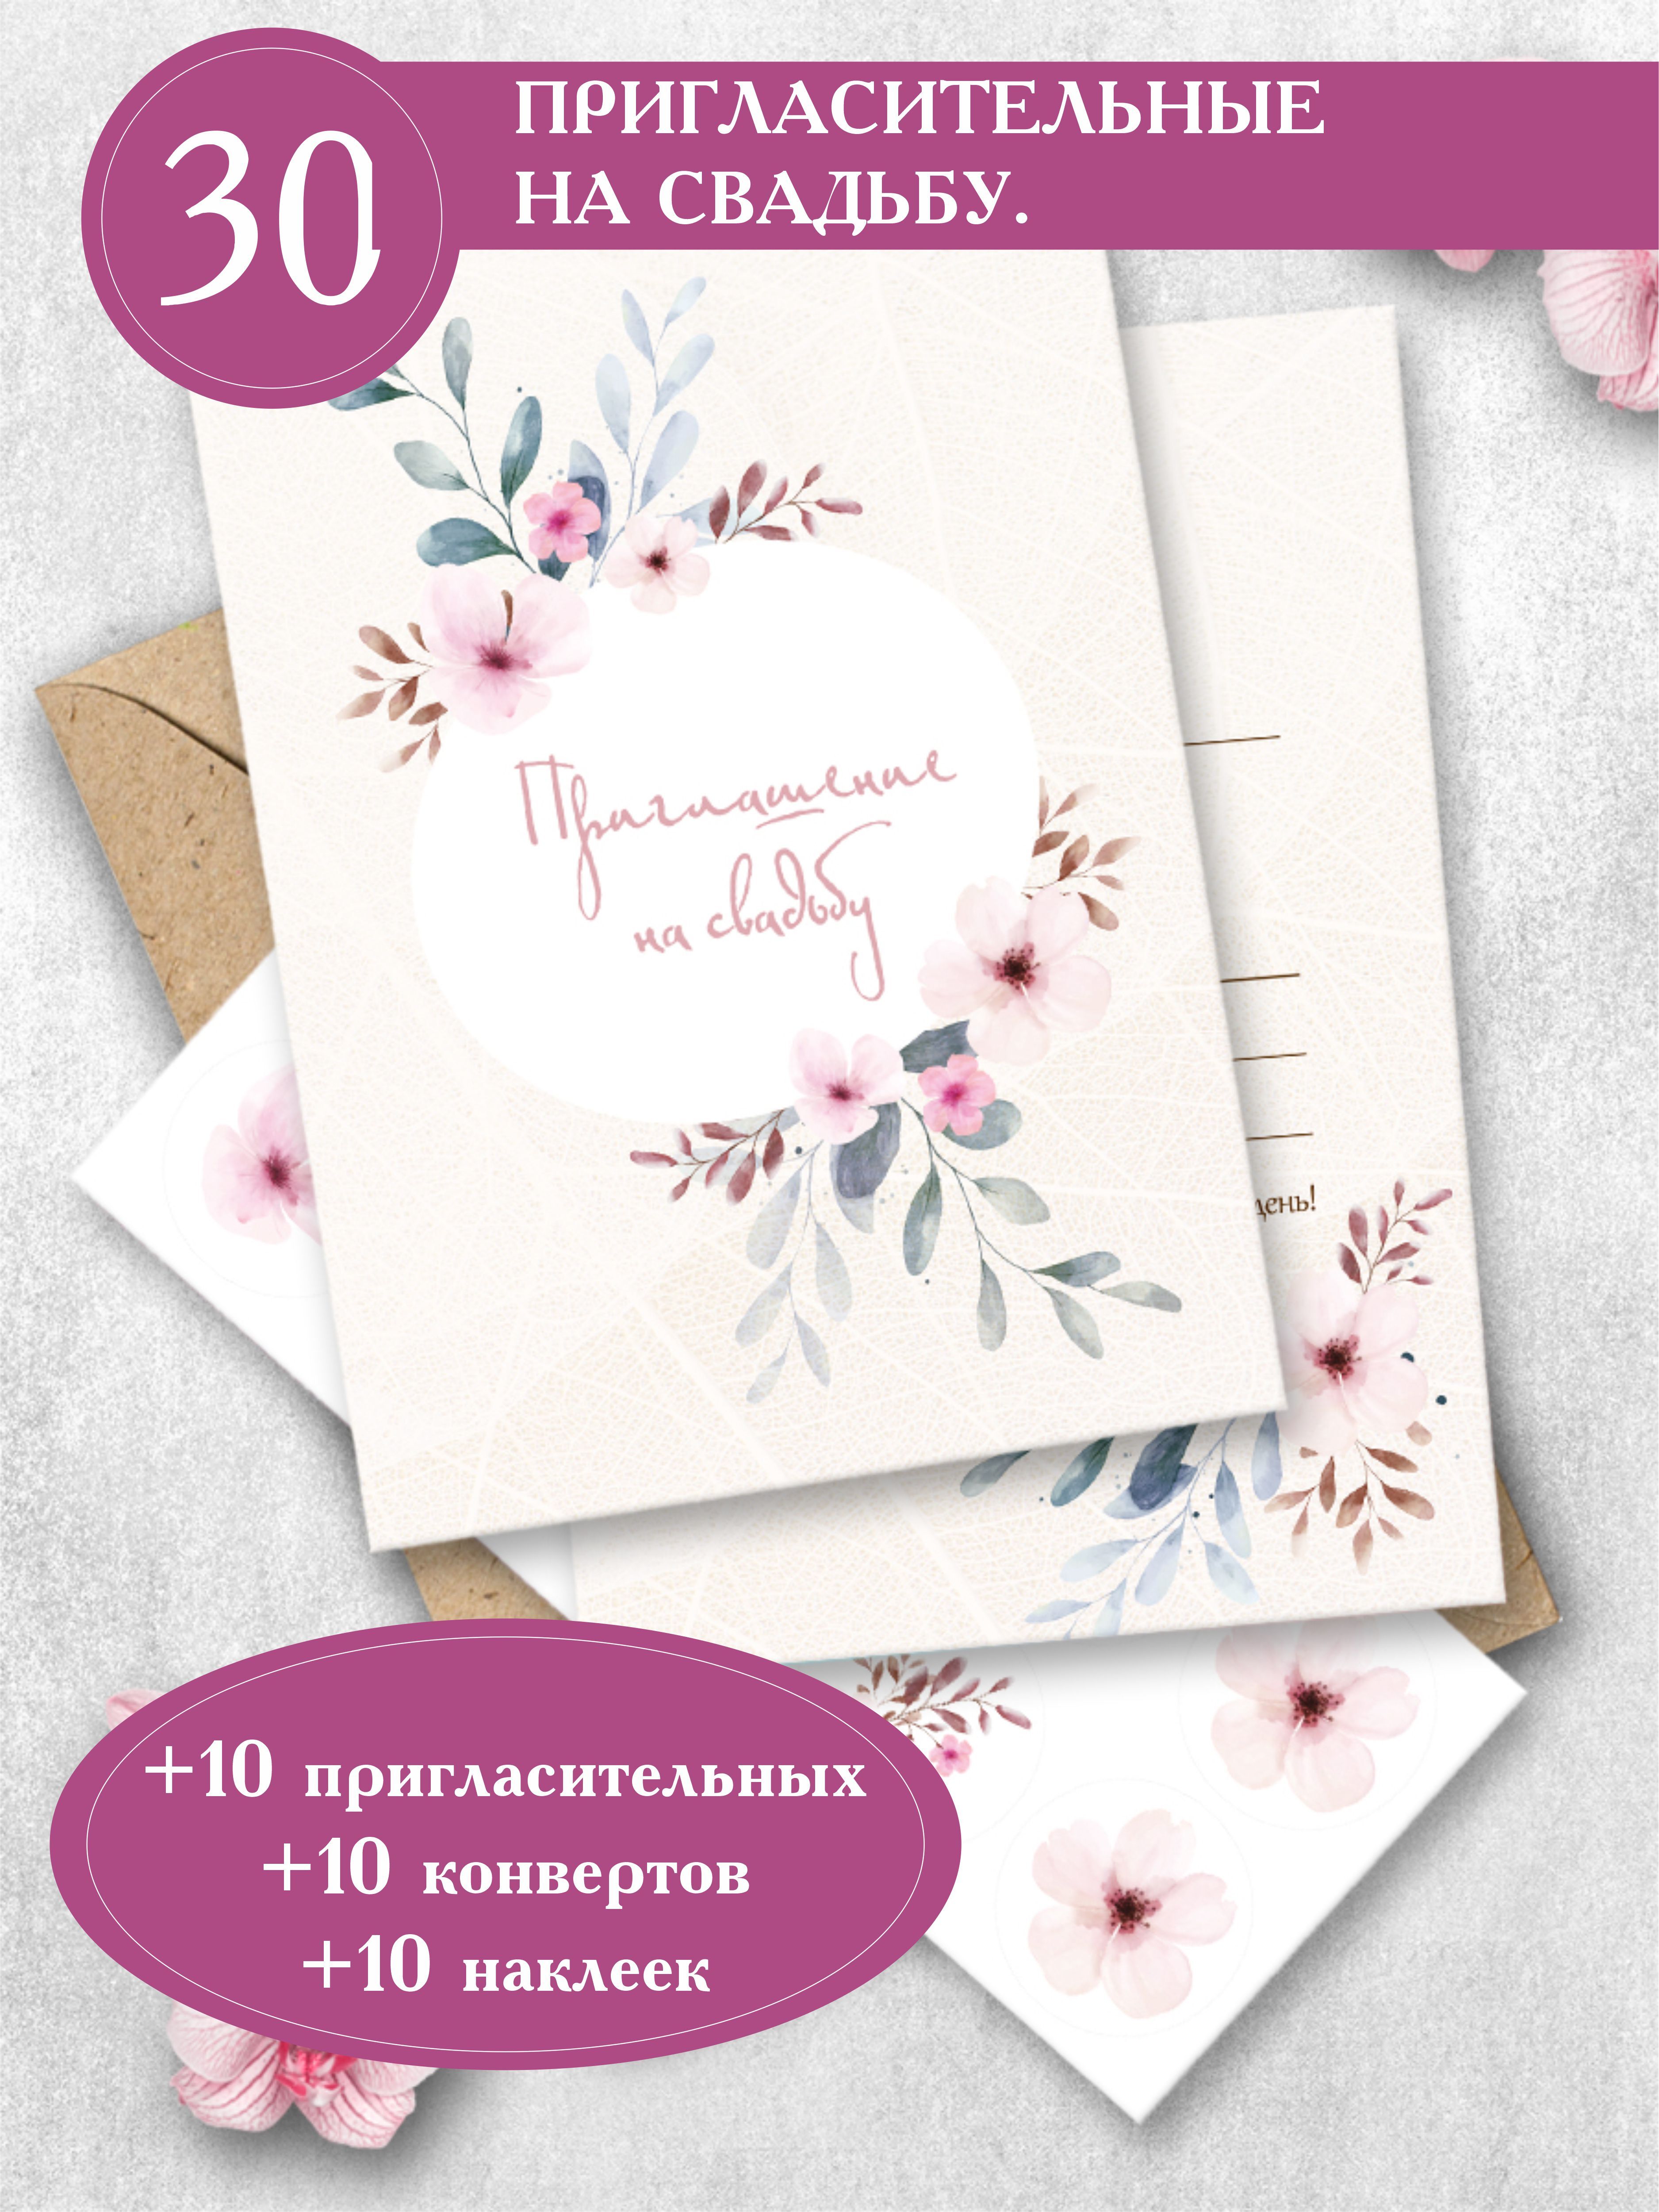 Пригласительные-конверты на свадьбу орхидеи, сердца 8*15см 001802